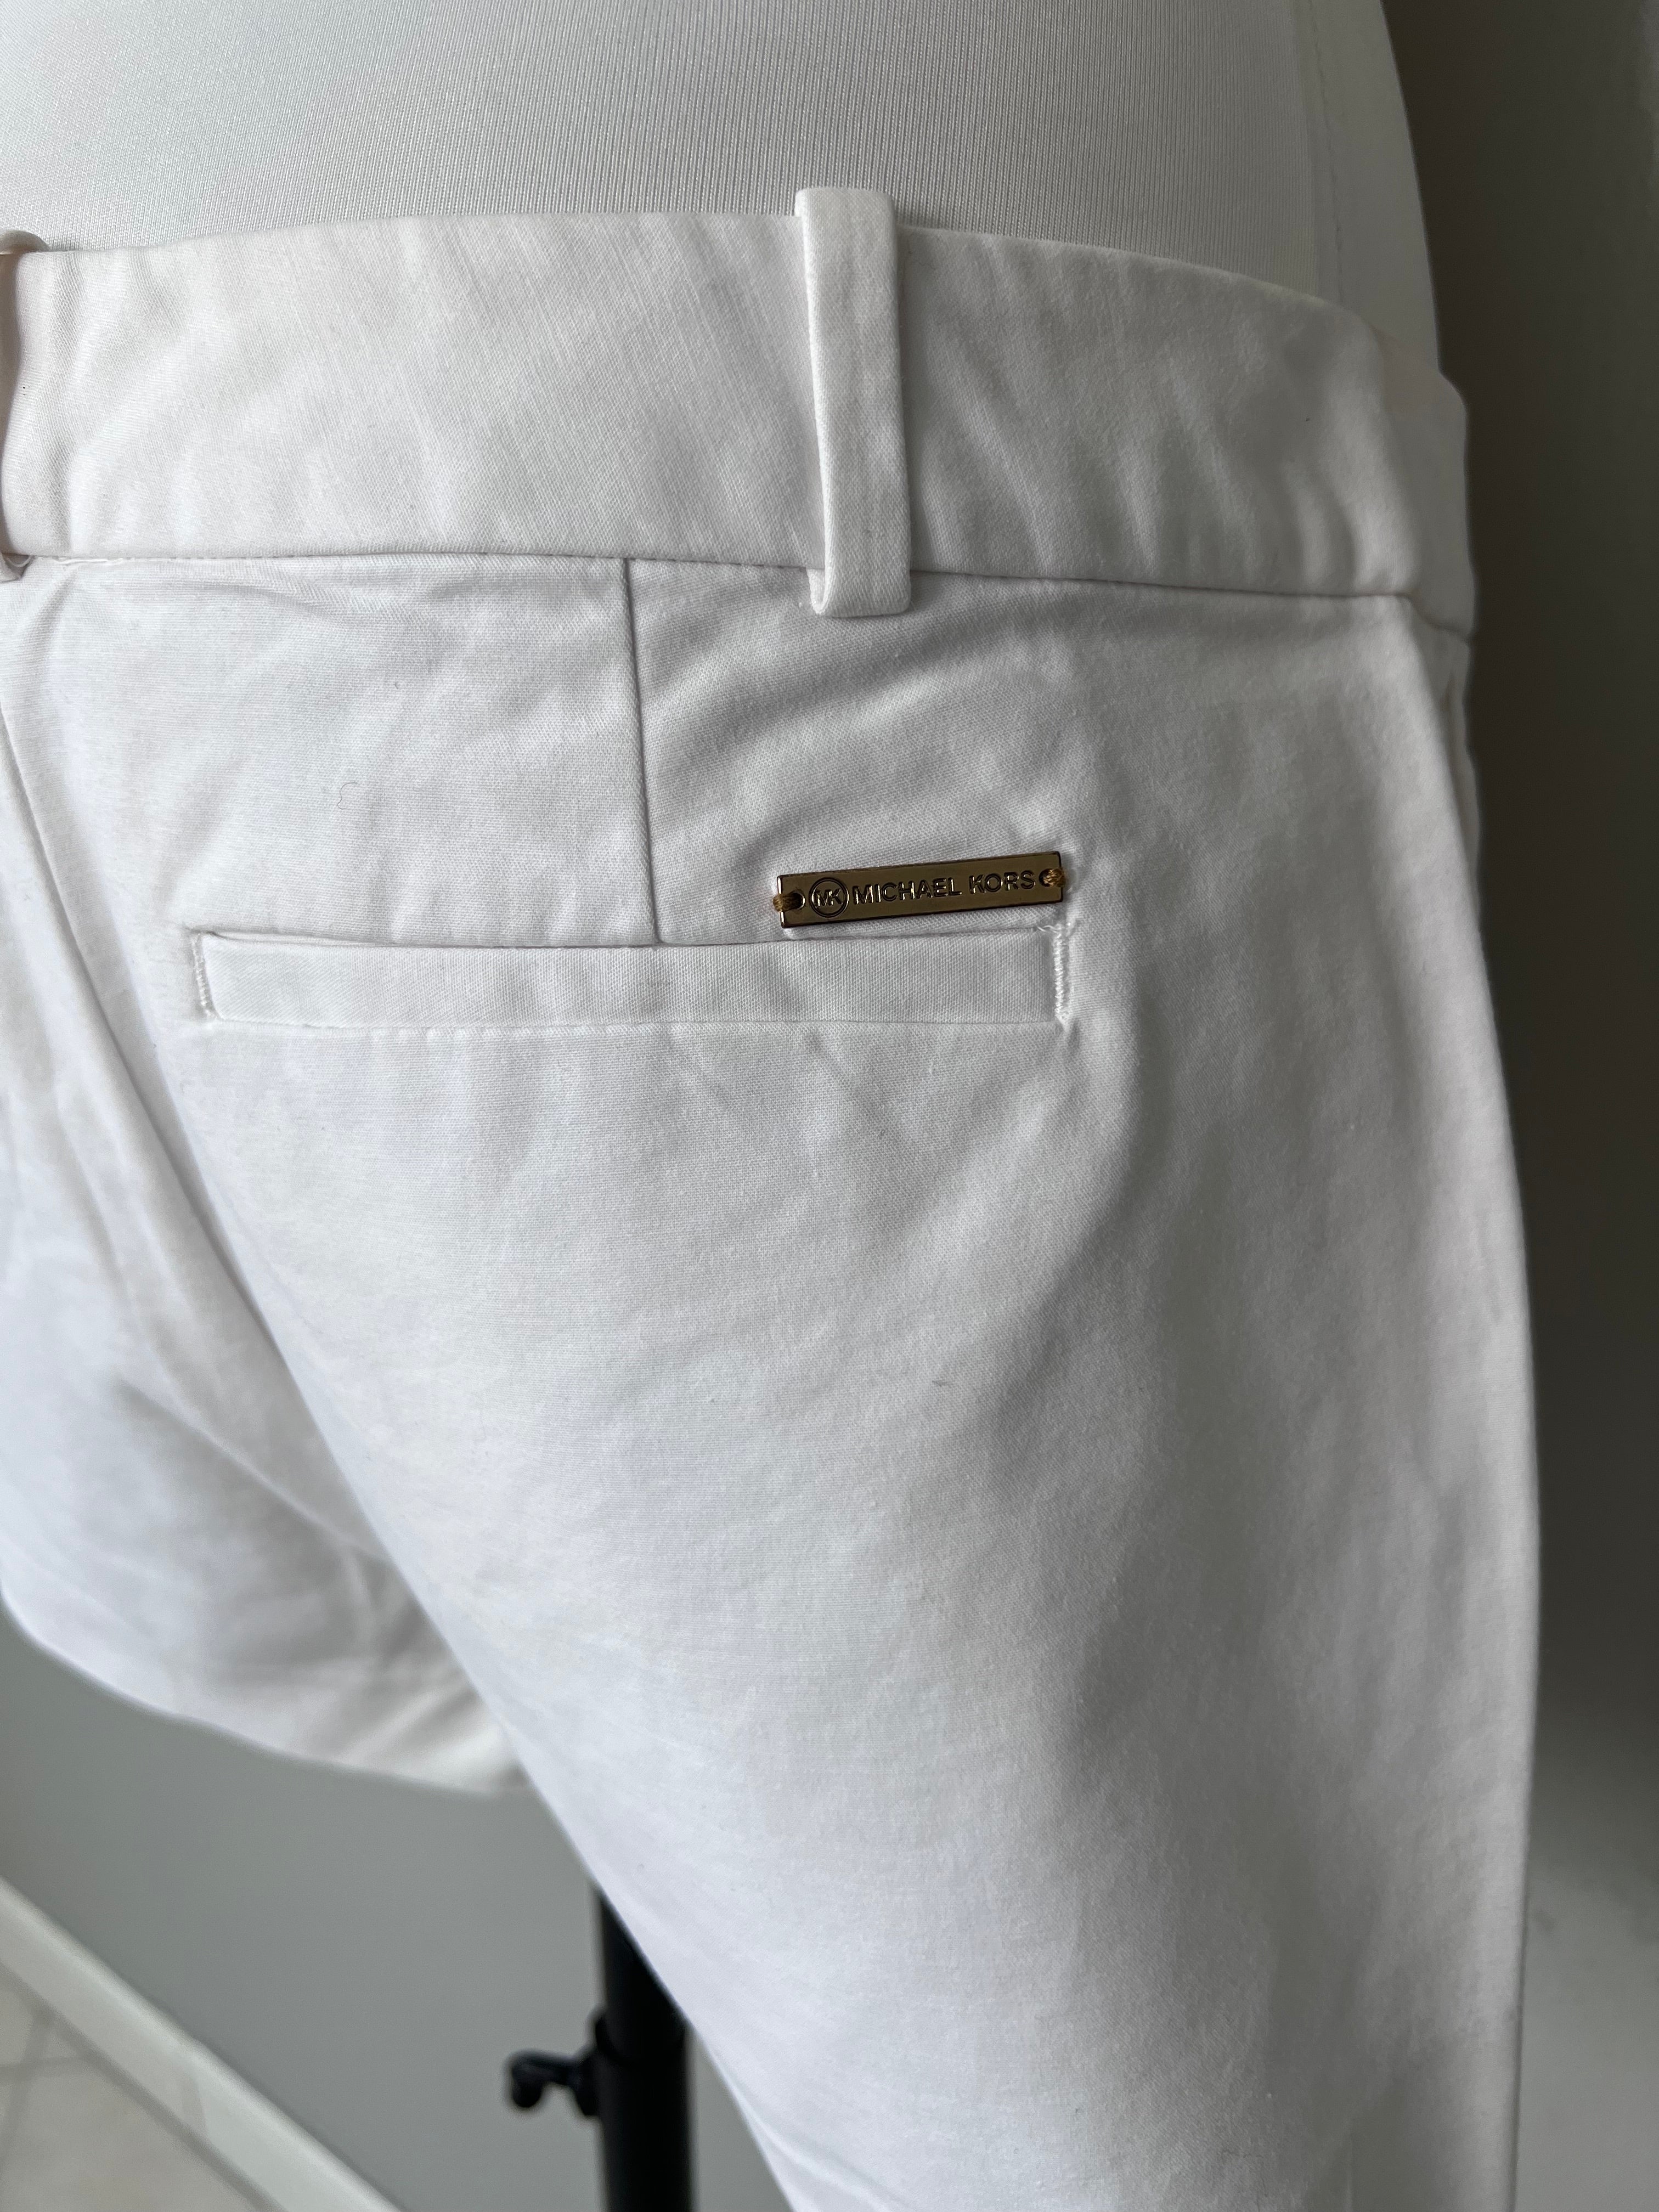 White plain mini shorts - MICHAEL KORS